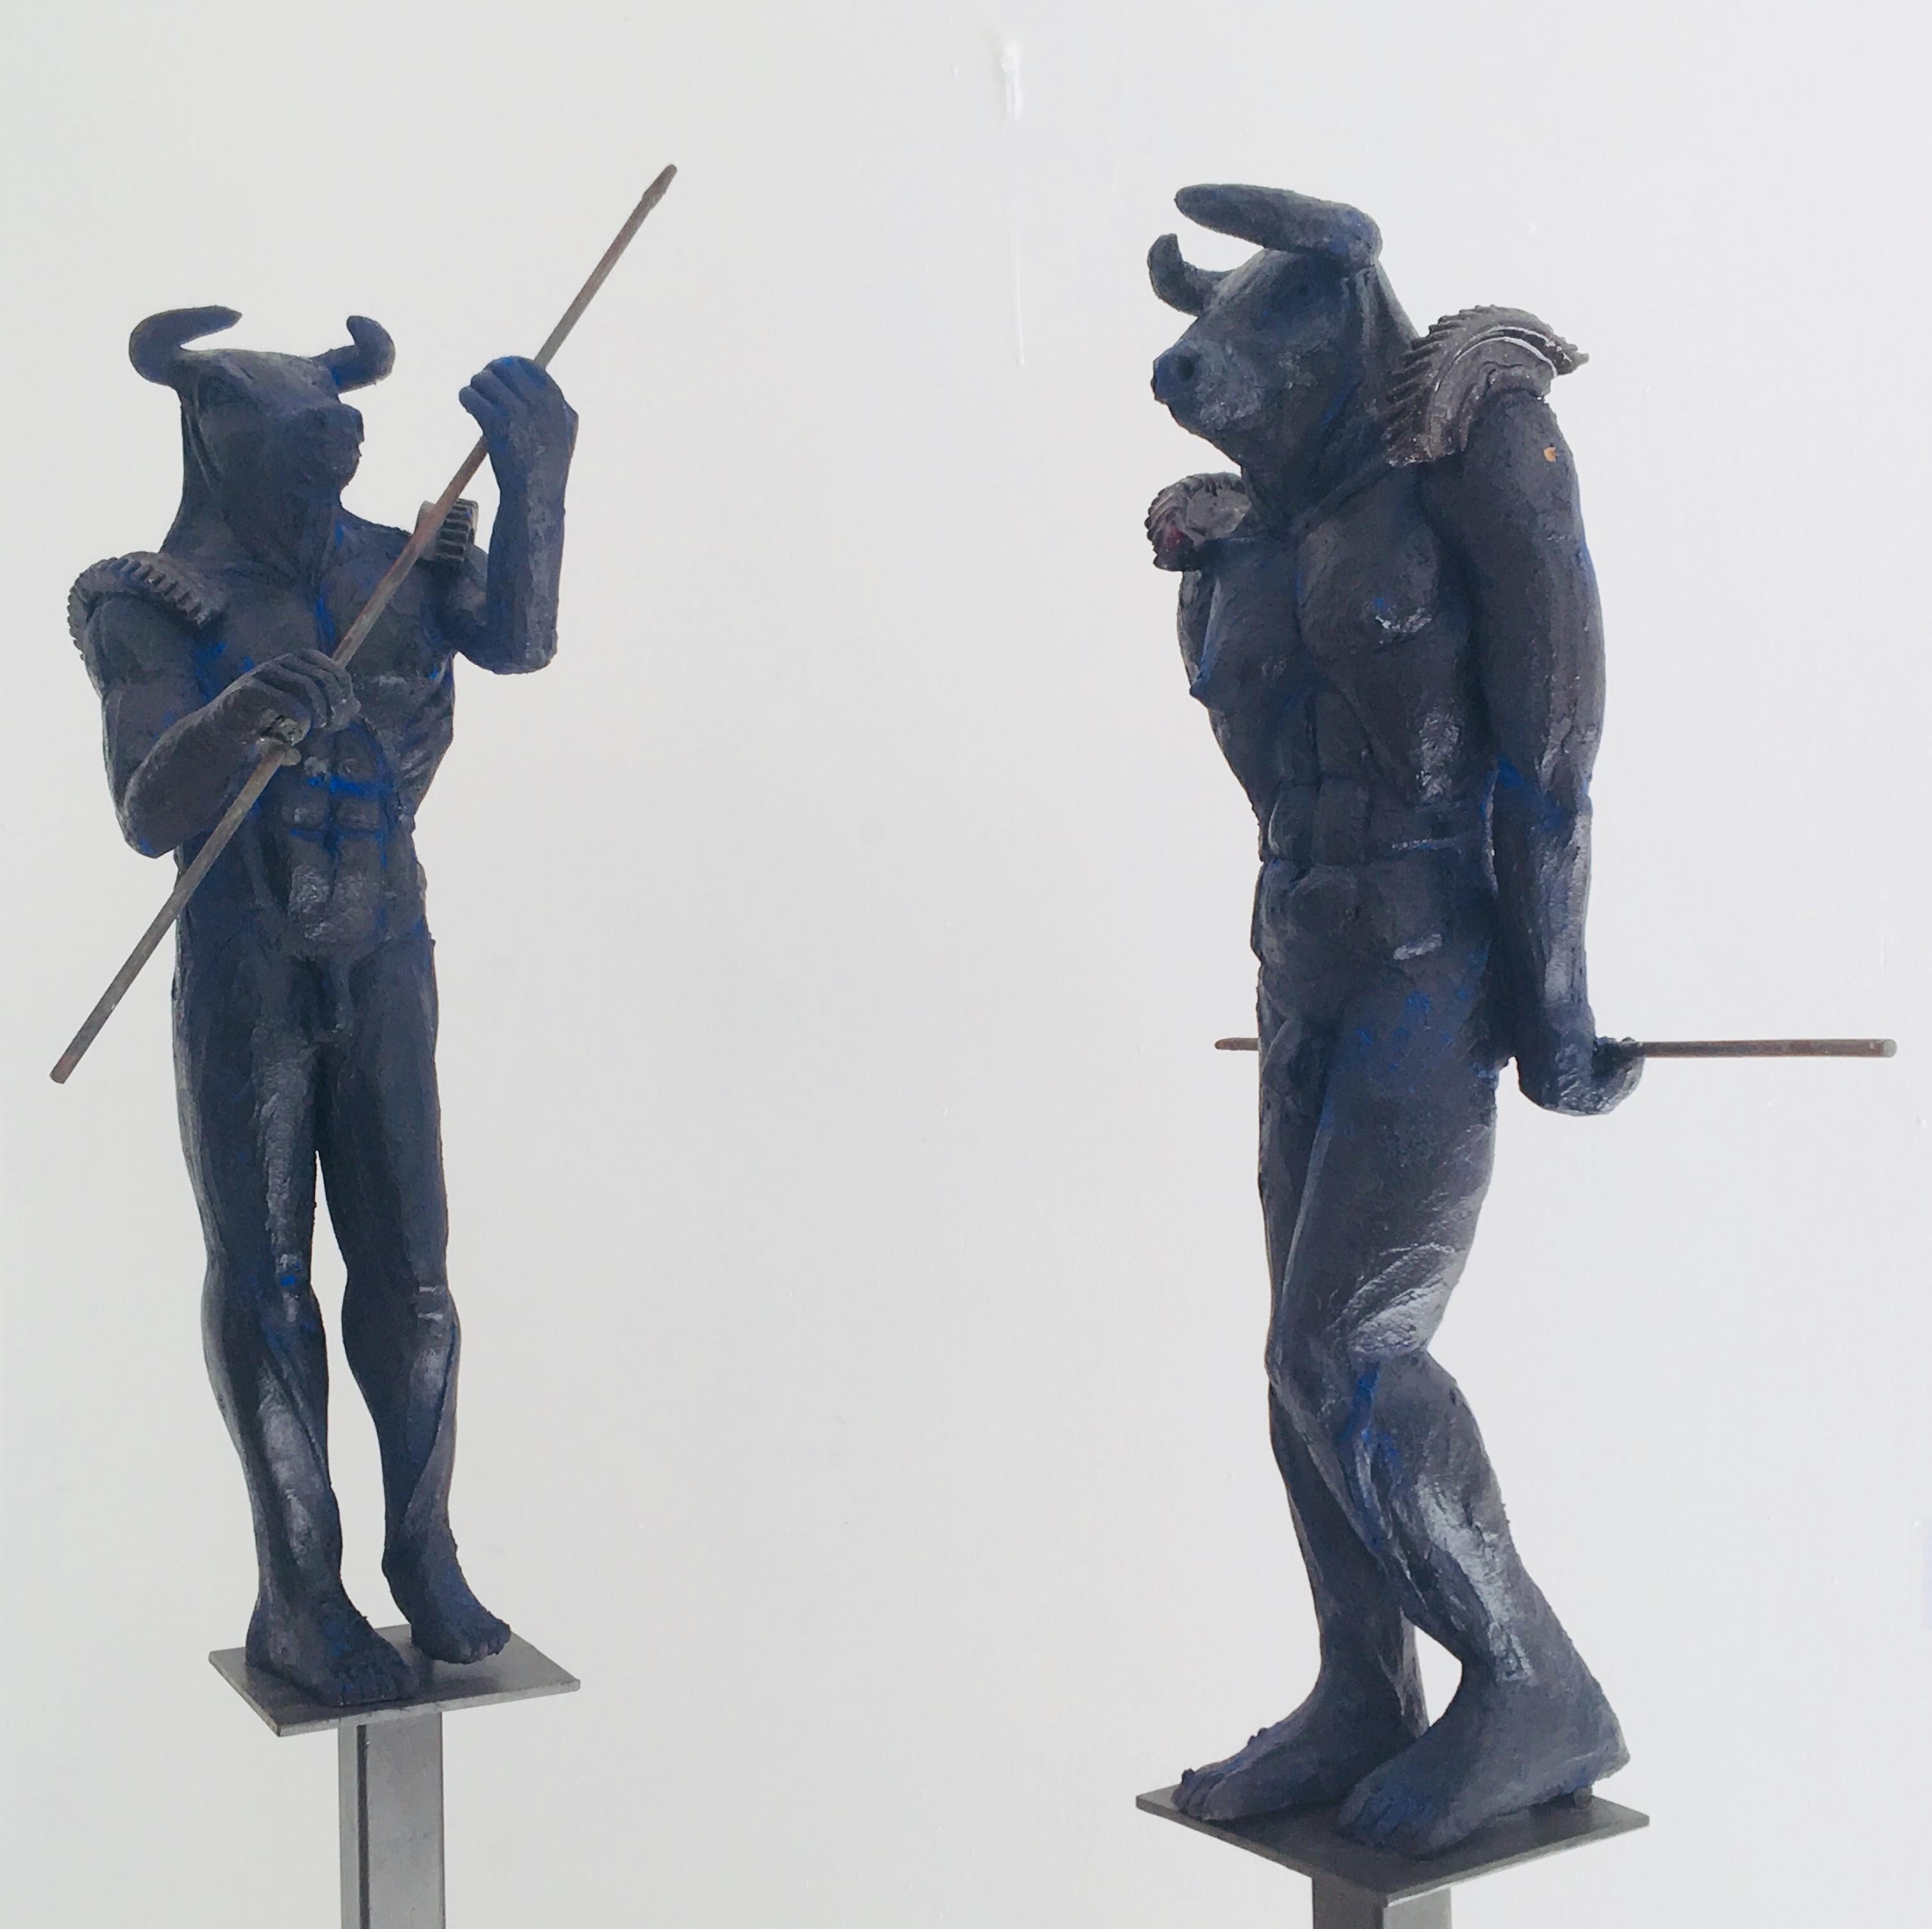 Minotaur (Papier von Skulpturen verfügbar) – Sculpture von Mariko